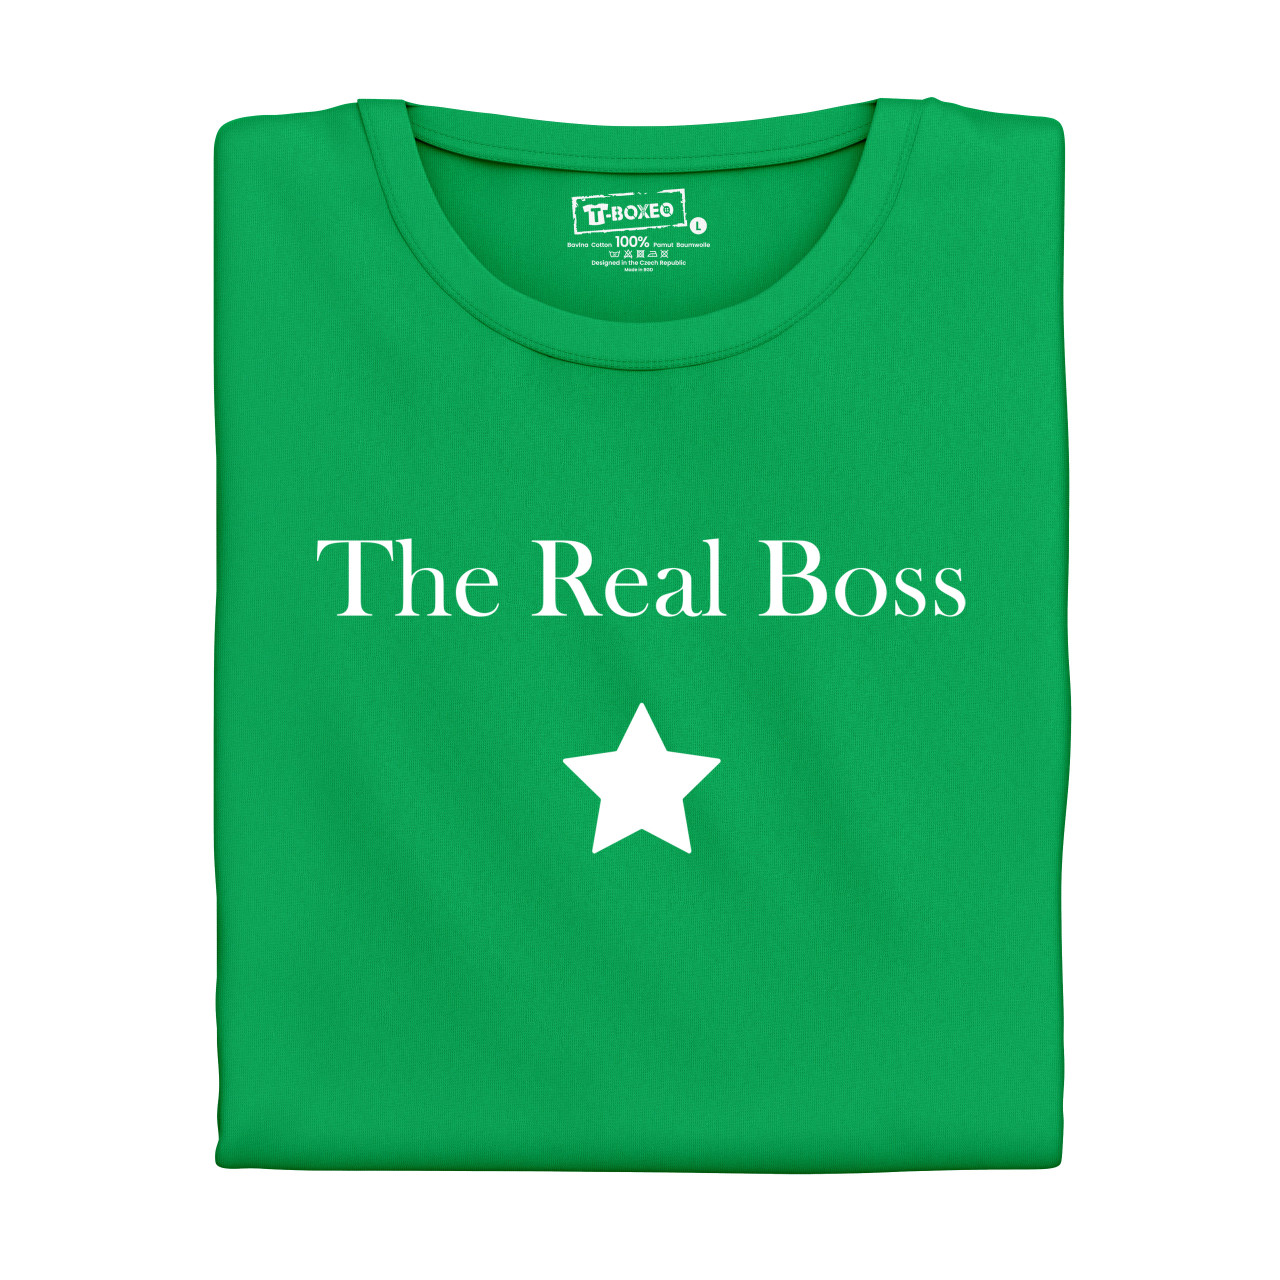 Dámské tričko s potiskem "The Real Boss"